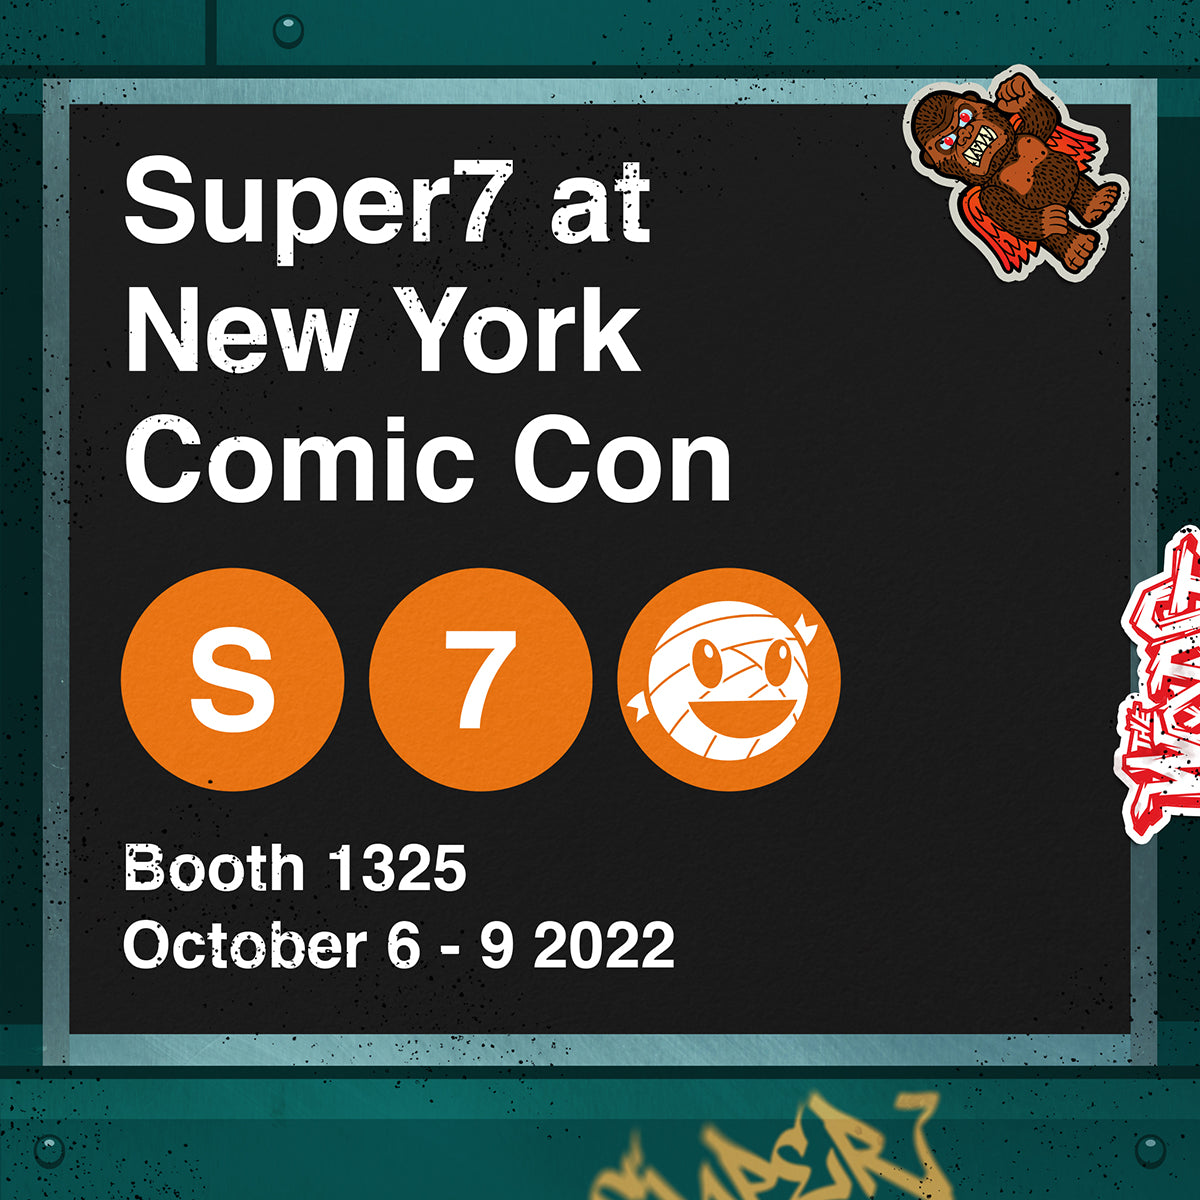 Super7 at New York Comic Con 2022 image